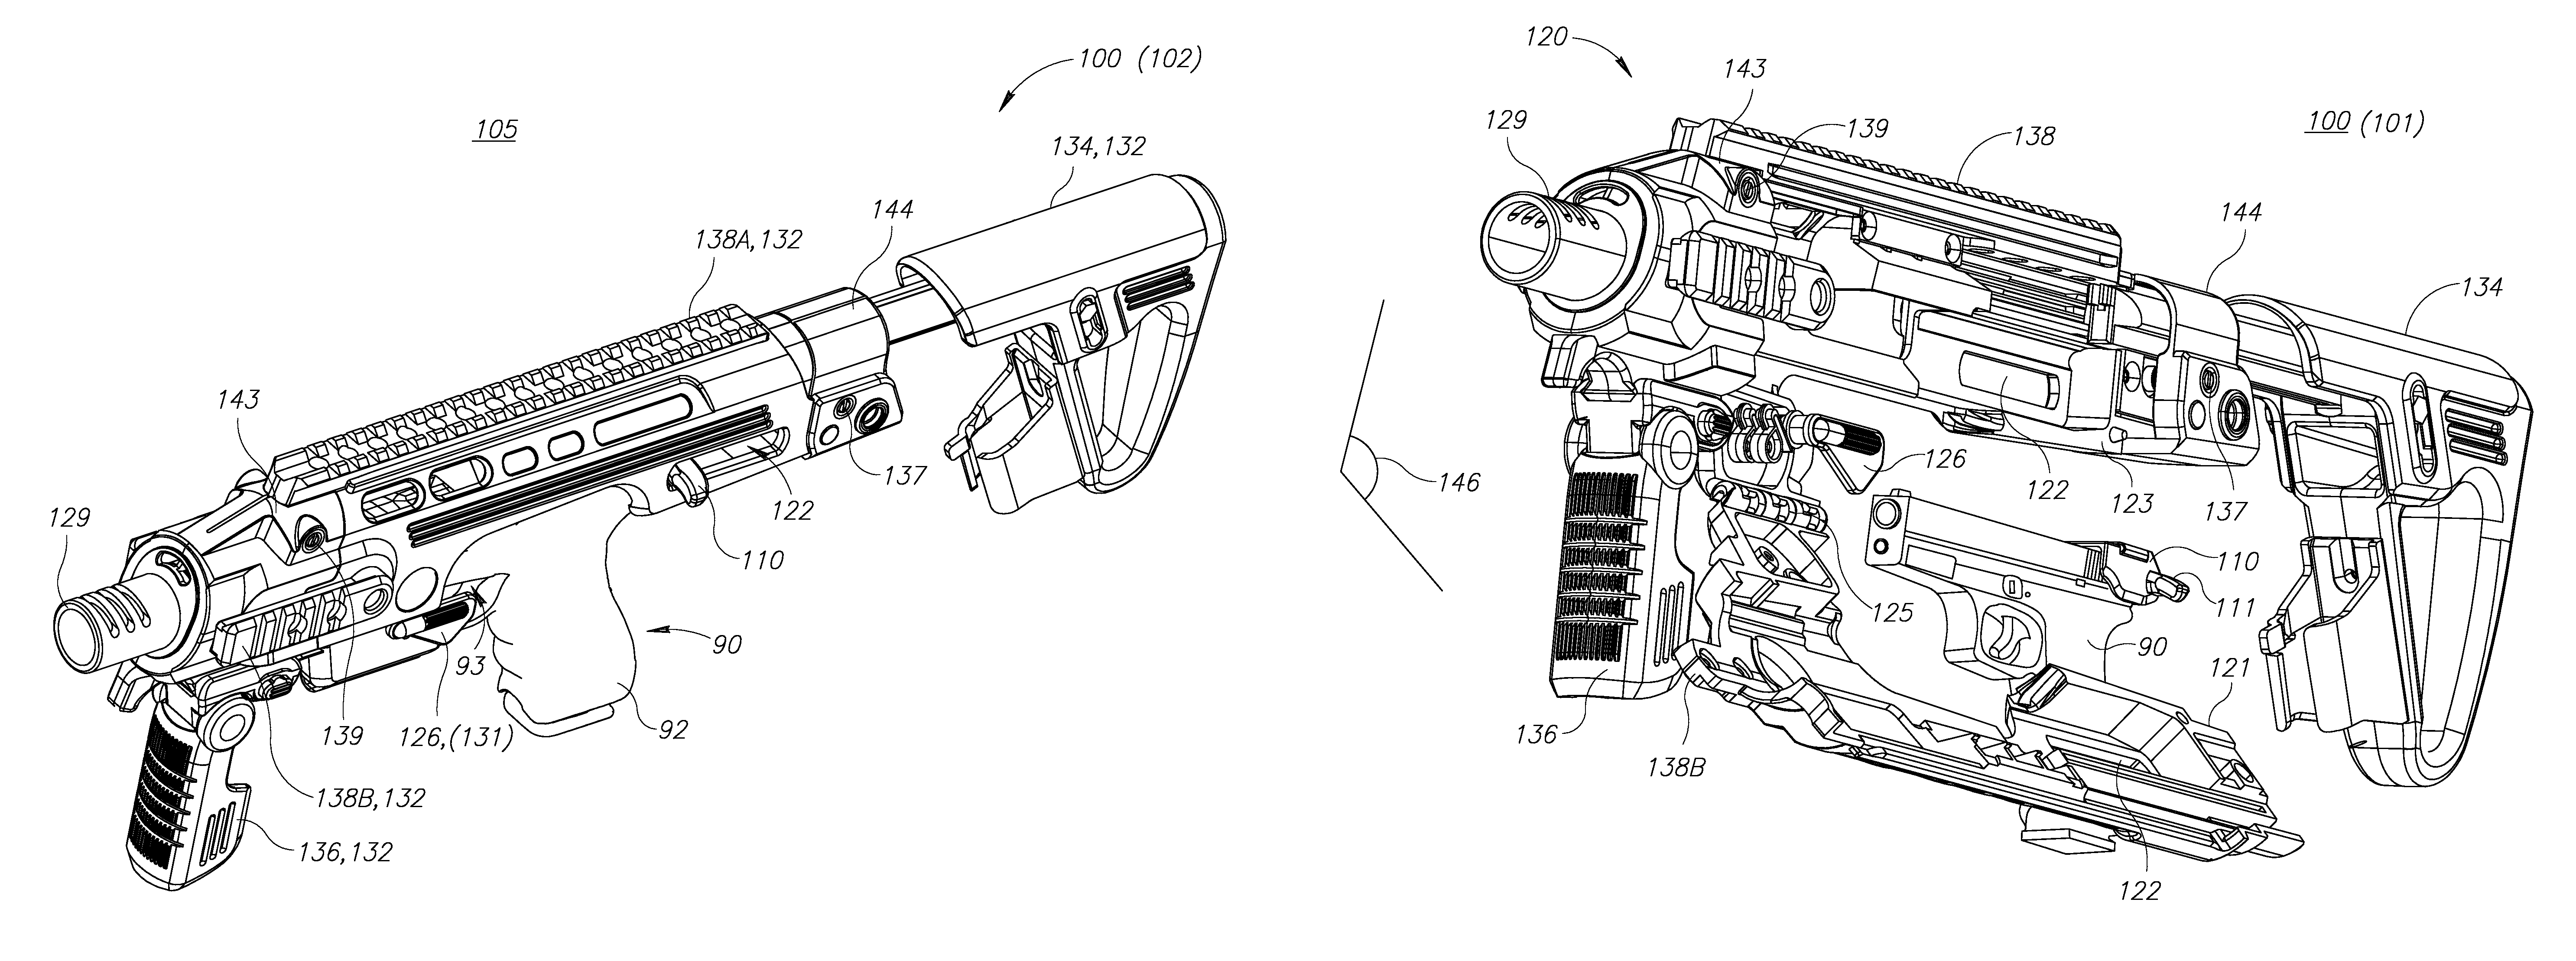 Handgun converter